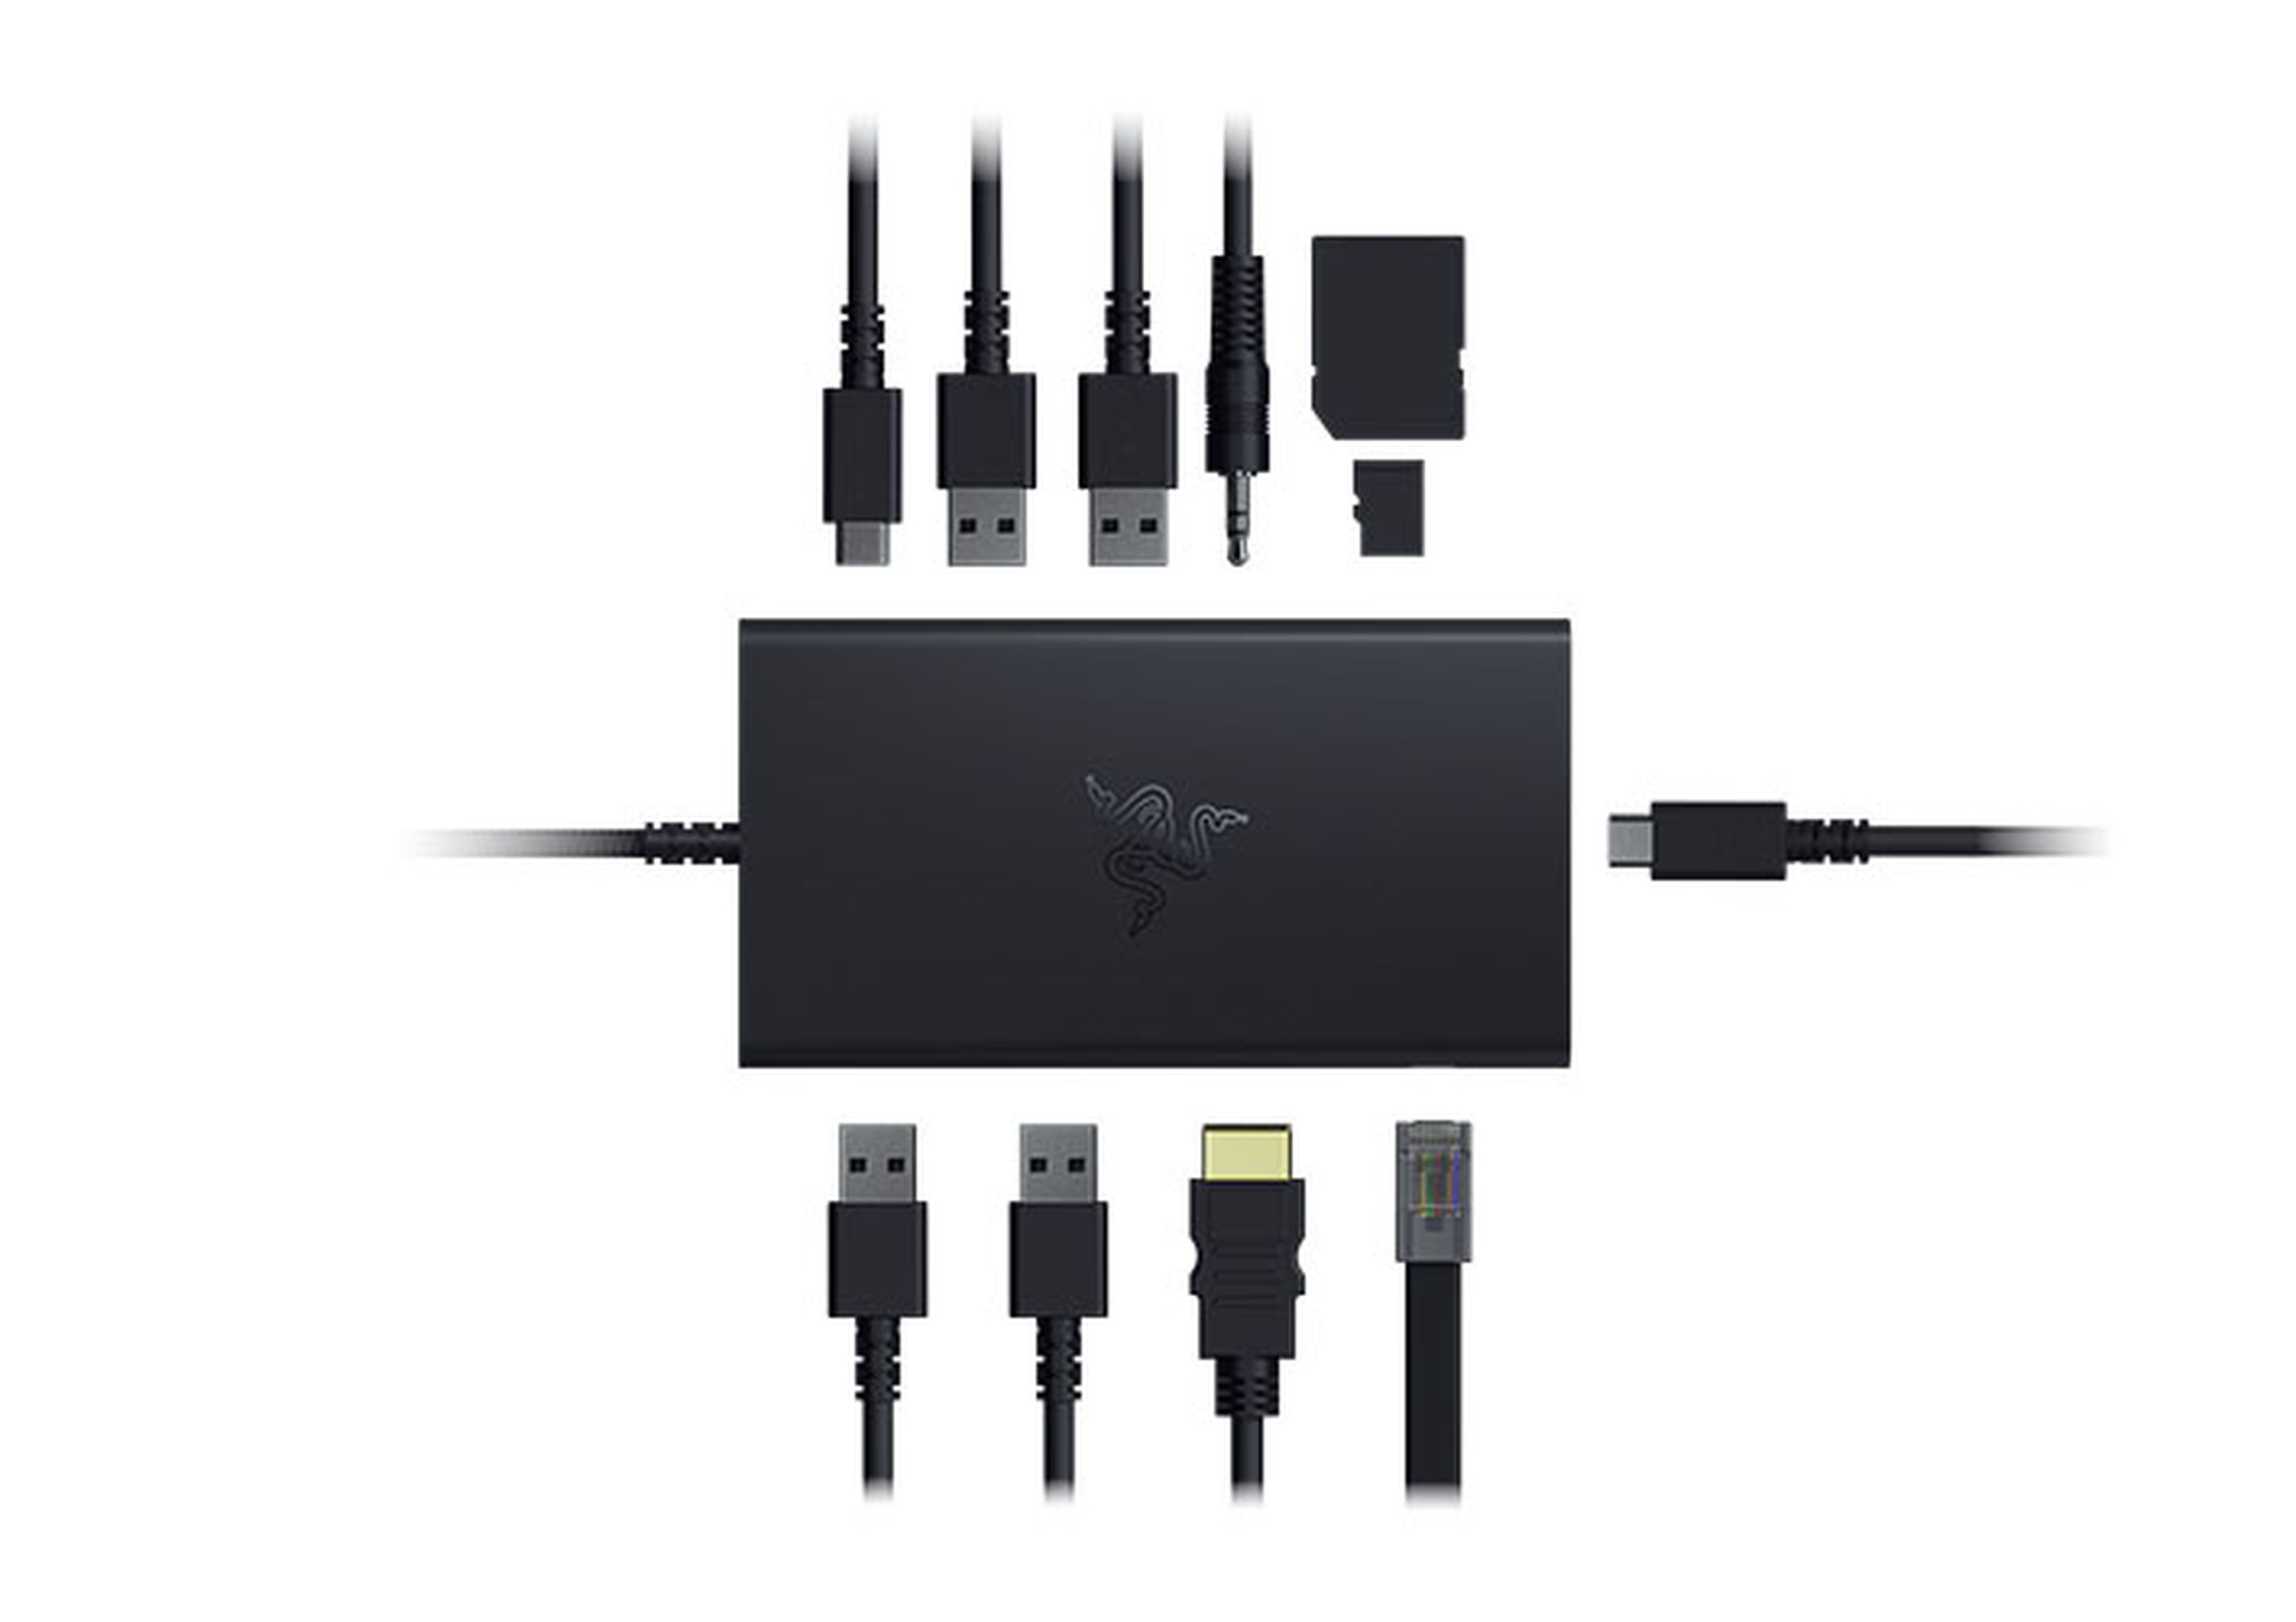 Esta base USB cuenta con una variedad de puertos y ranuras para tarjetas y conector de audio